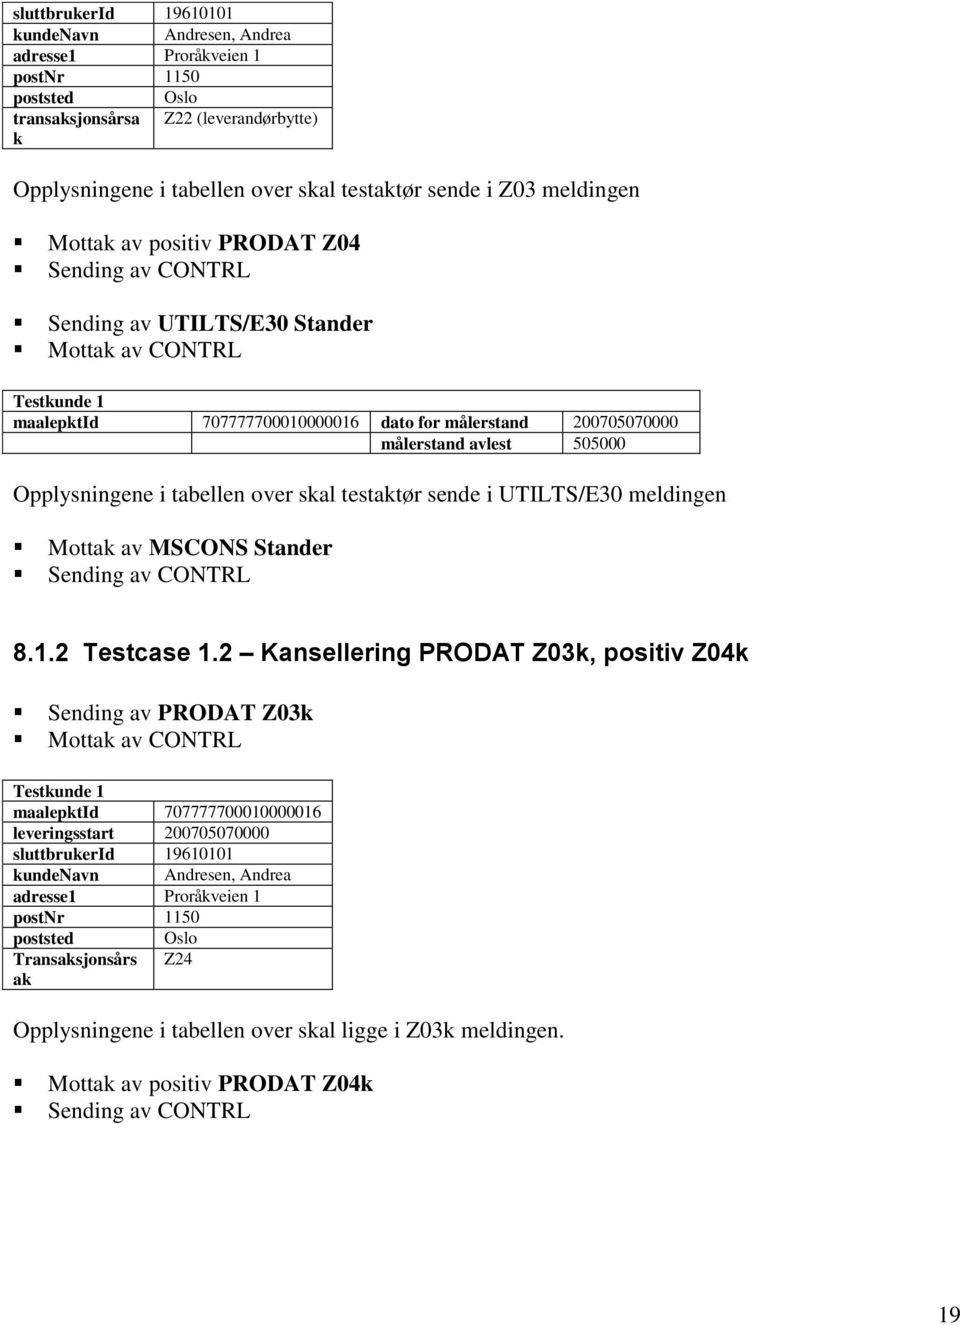 505000 Opplysningene i tabellen over skal testaktør sende i UTILTS/E30 meldingen Mottak av MSCONS Stander Sending av CONTRL 8.1.2 Testcase 1.